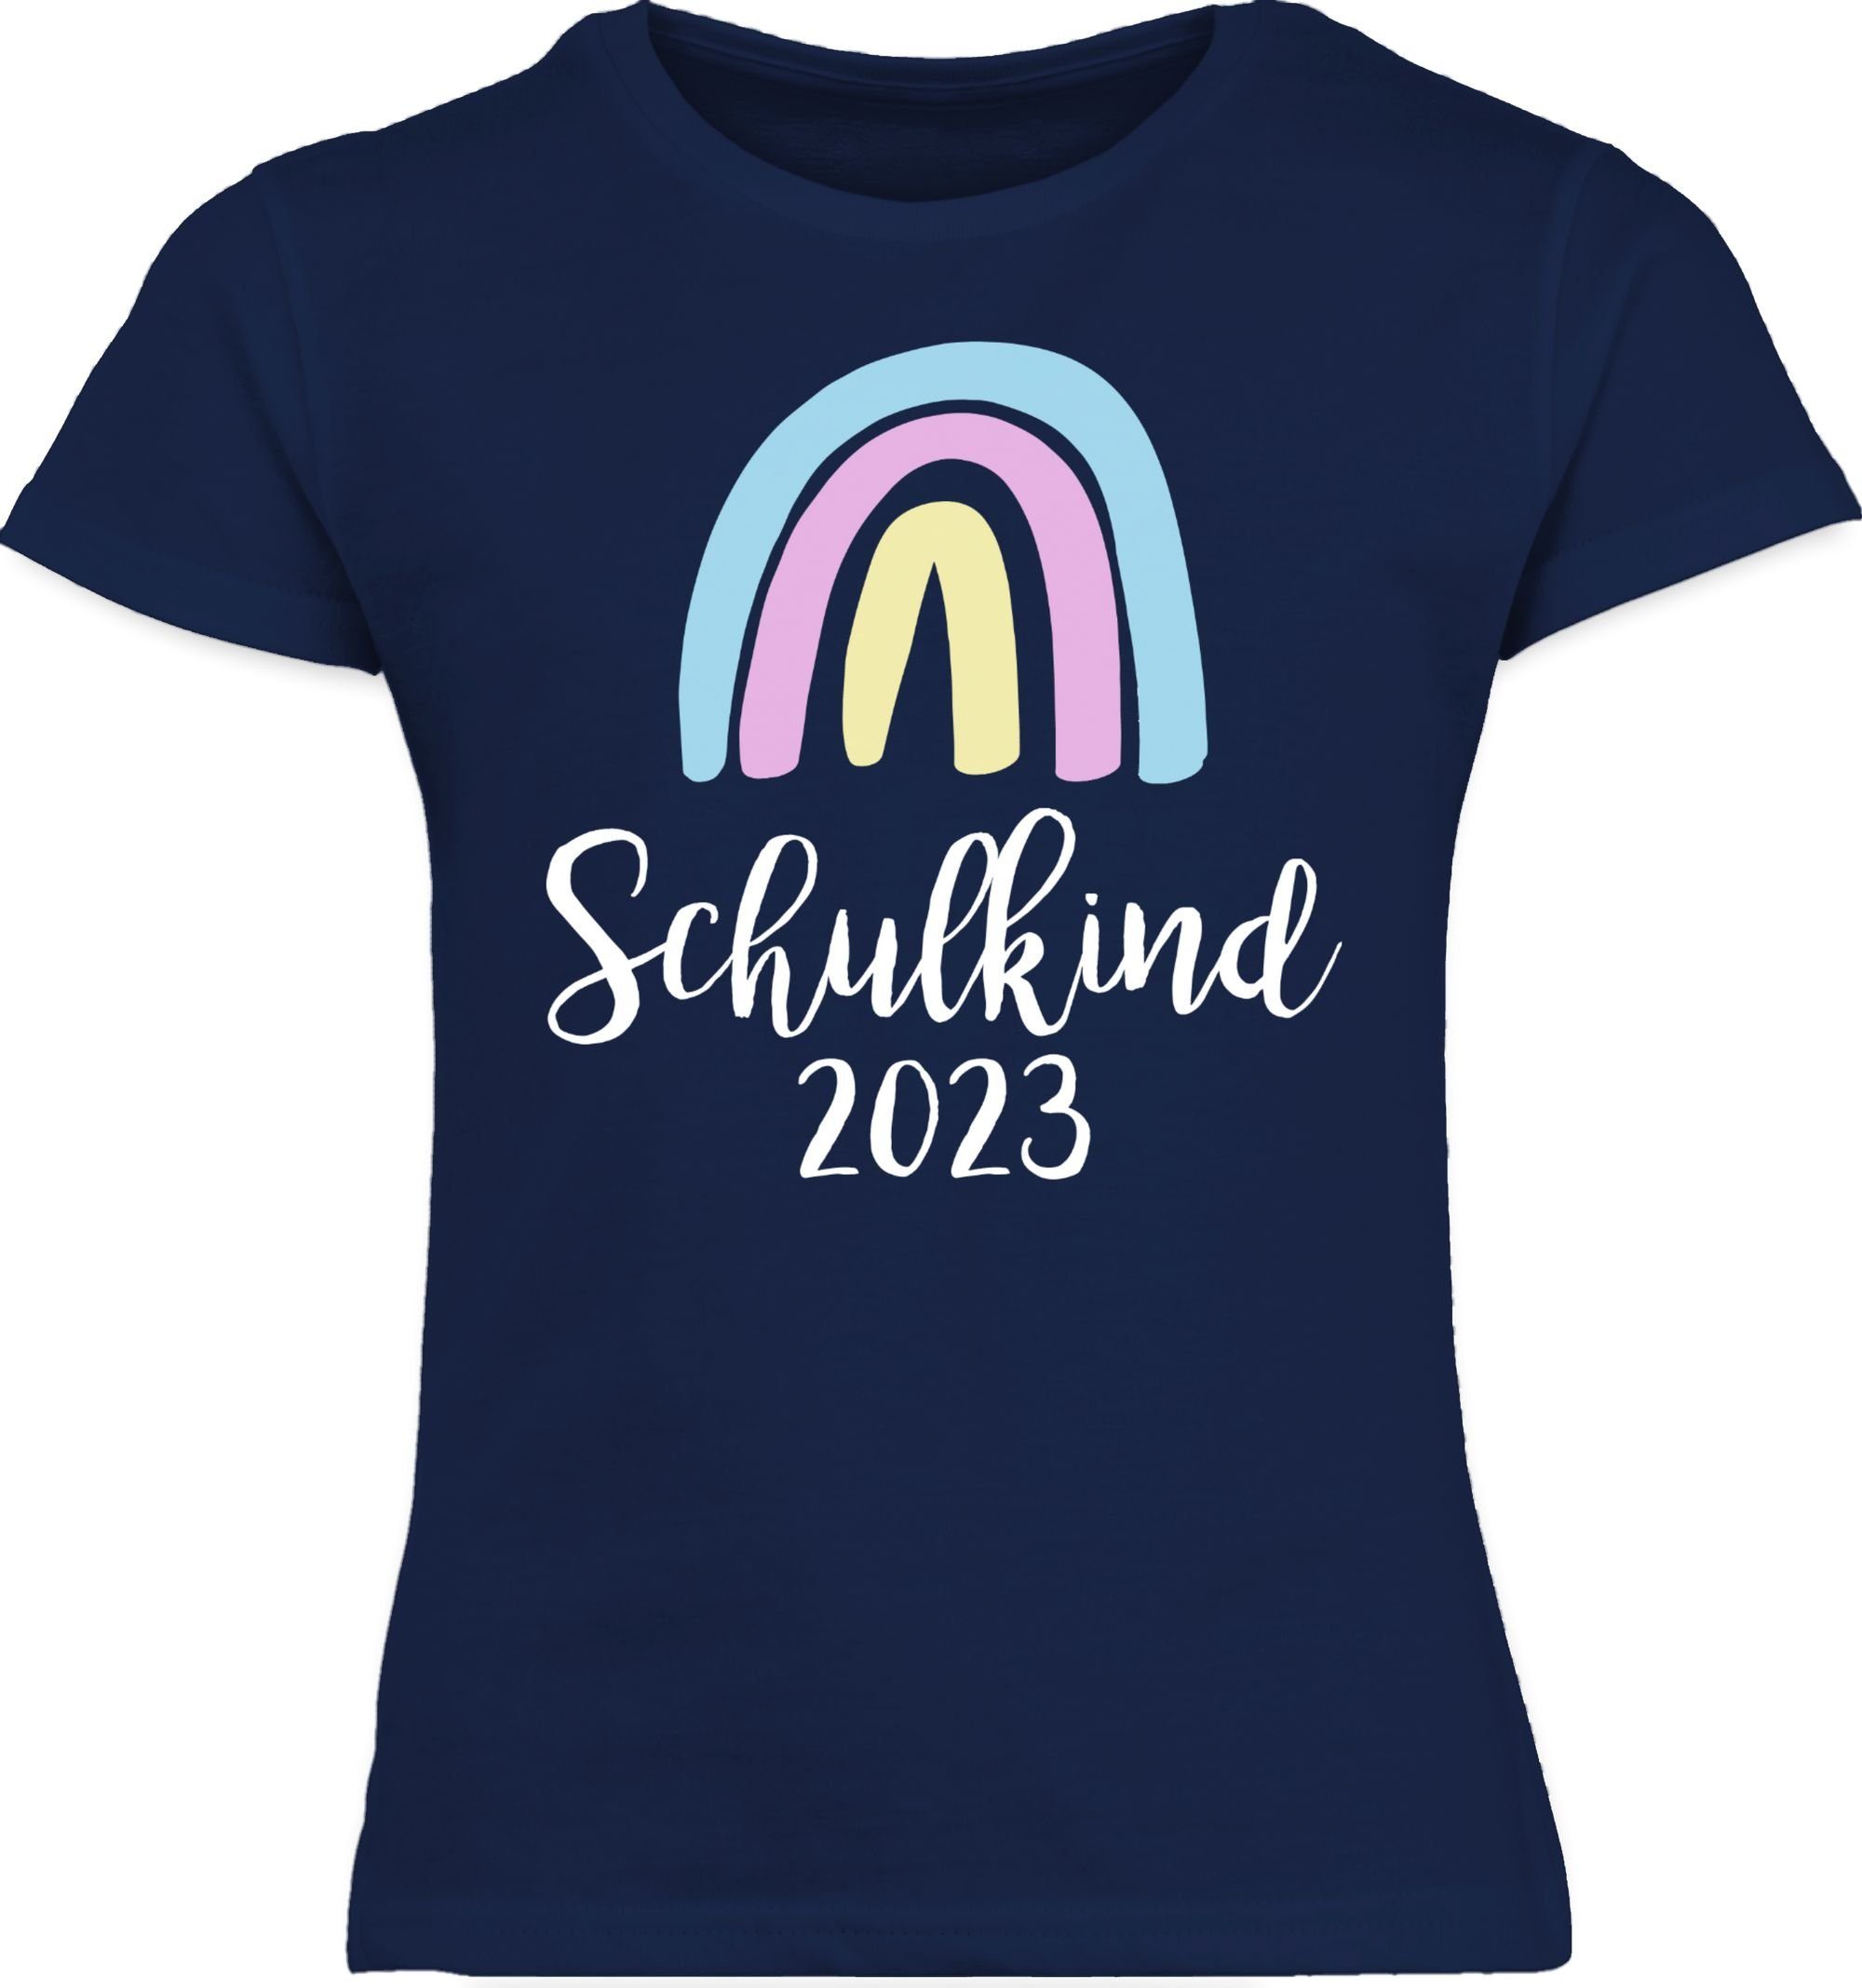 Shirtracer T-Shirt Schulkind 2023 Regenbogen Pastell / Weiß Einschulung Mädchen 2 Navy Blau